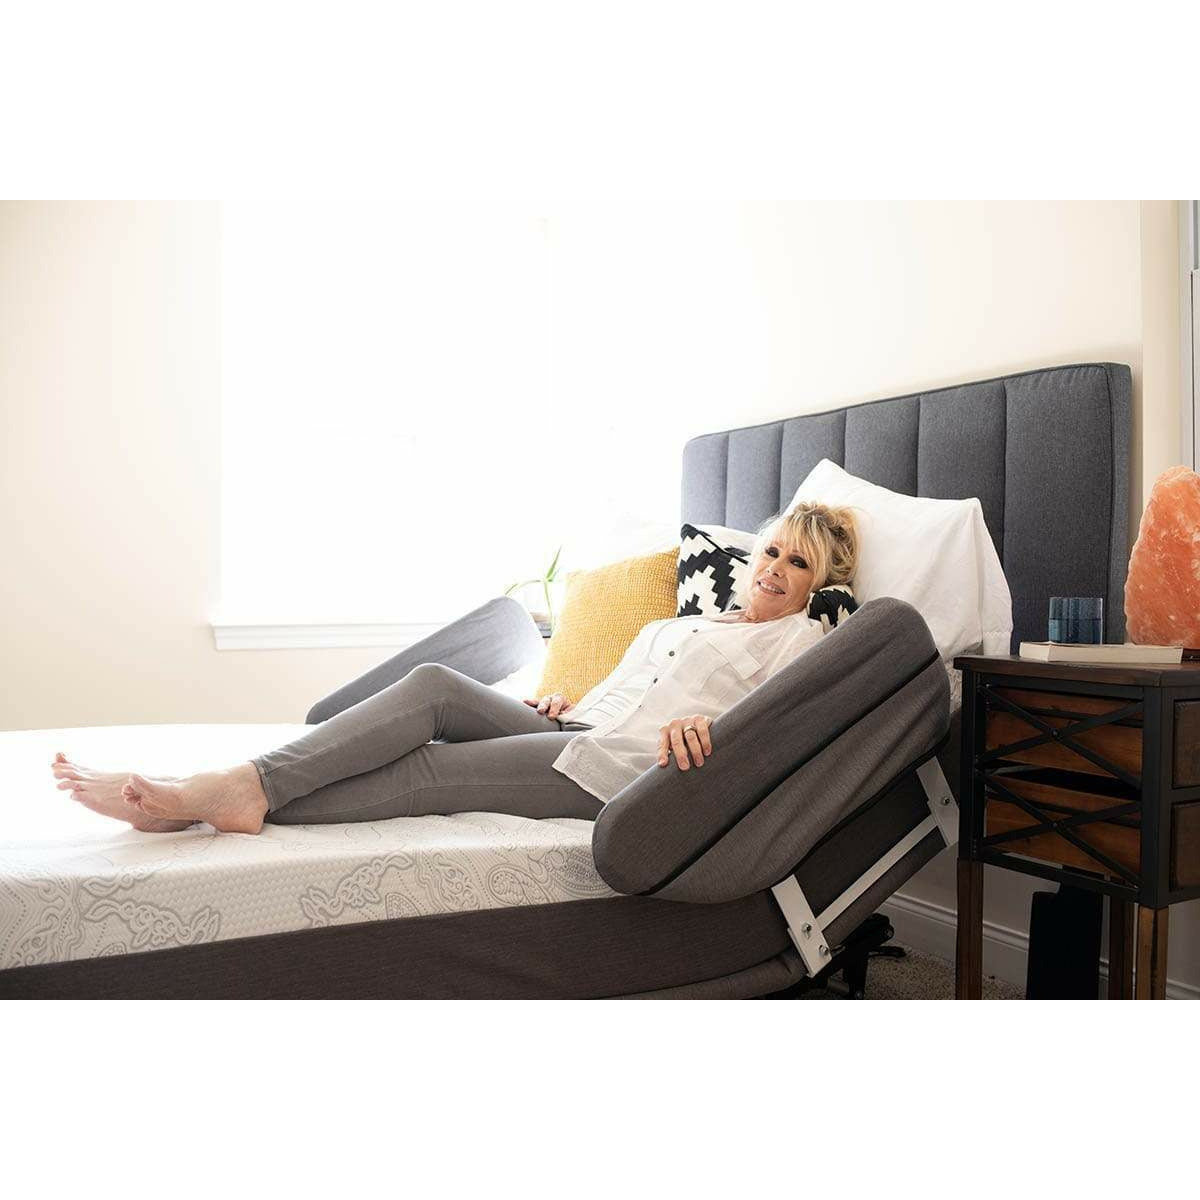 185 FLEXABED Hi-Low SL Adjustable Bed (Model No. 185) – Celesticare